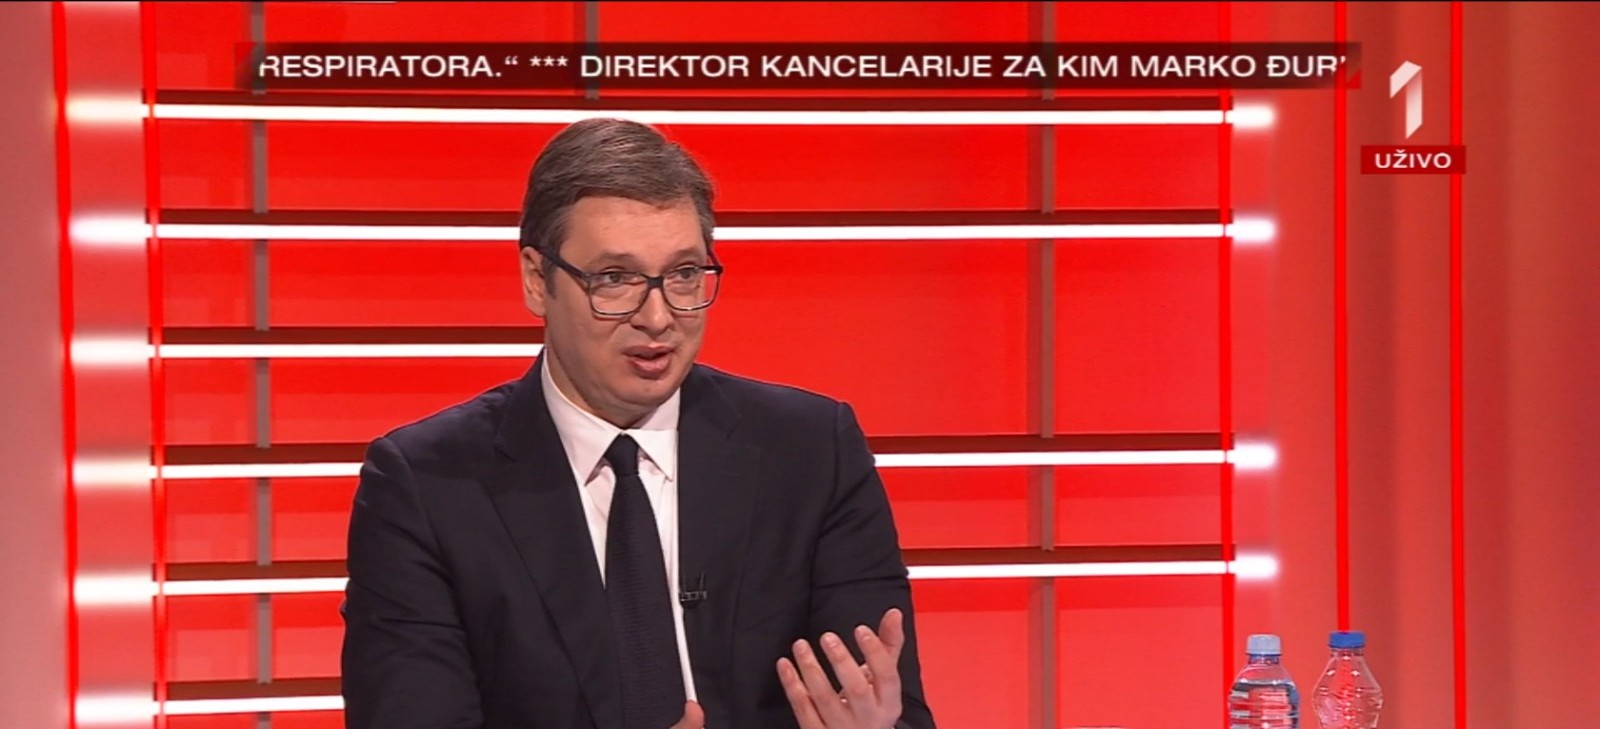 Predsednik Srbije Aleksandar Vucic u emisiji PRVA TEMA na TV Prva, povodom sadasnje situacije u Srbije zbog pandemije korona virusa.